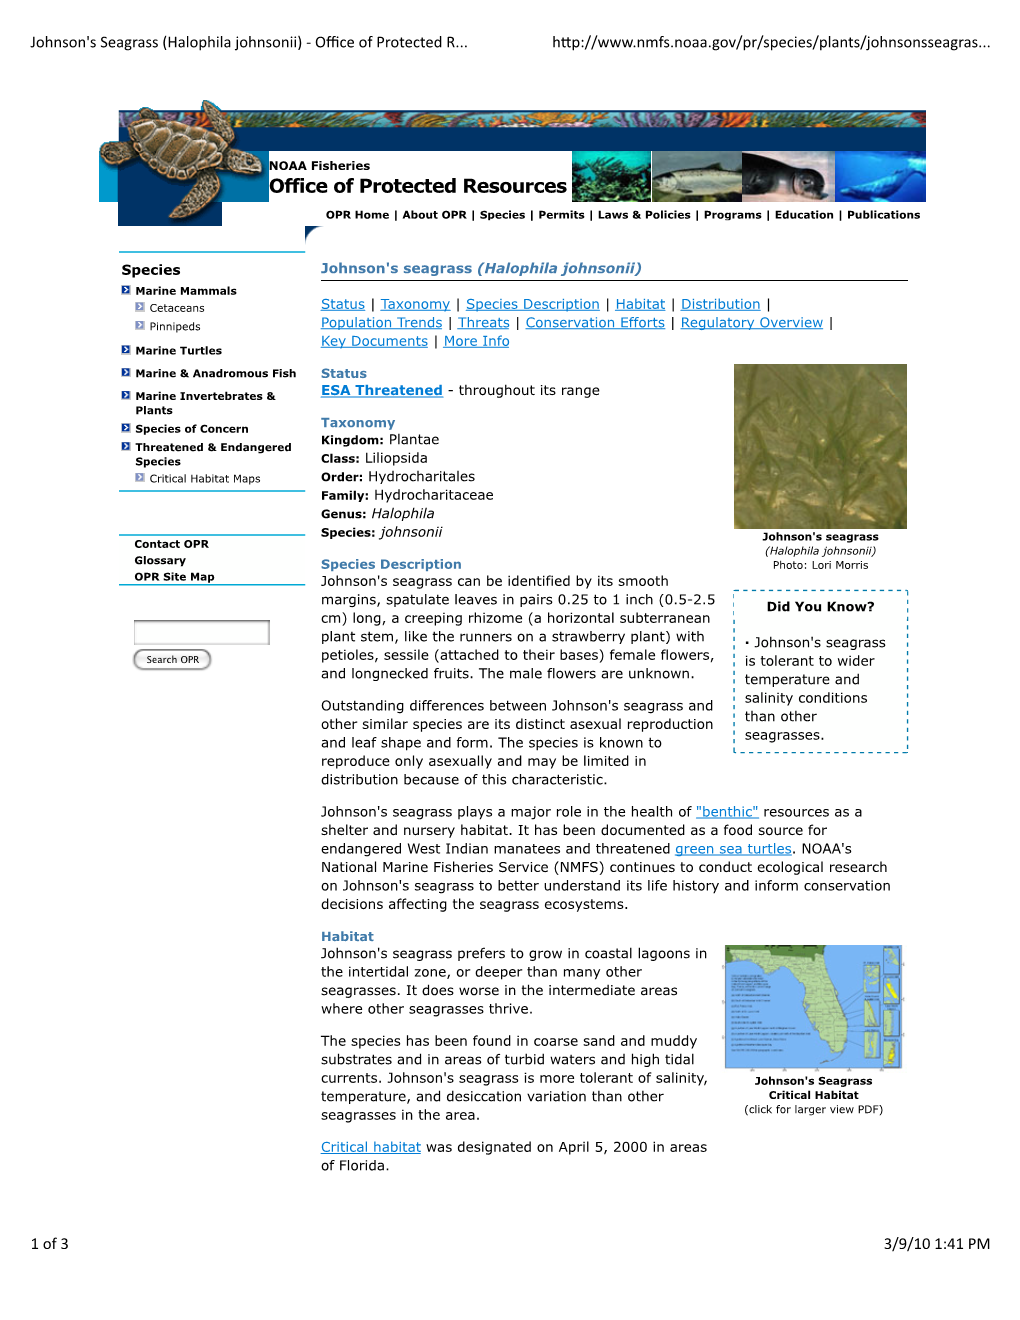 NOAA 2010 Johnsons Seagrass Weblink, TN180